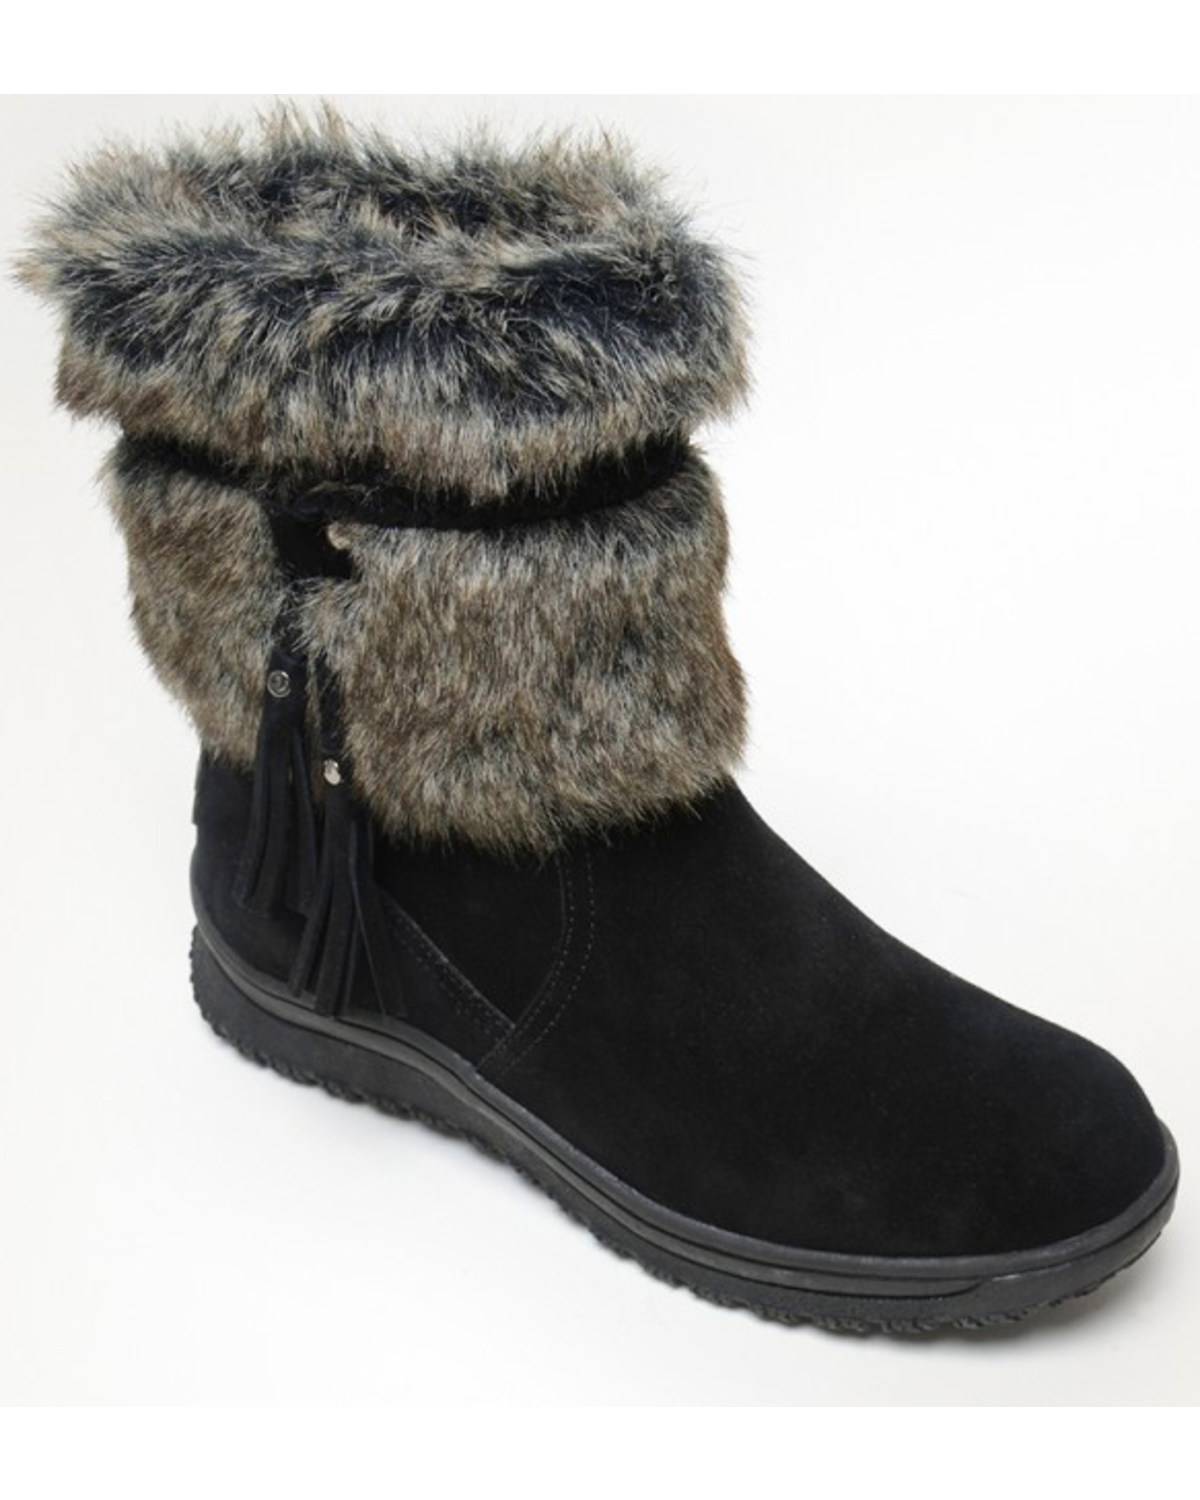 Buy > suede fur boot > in stock